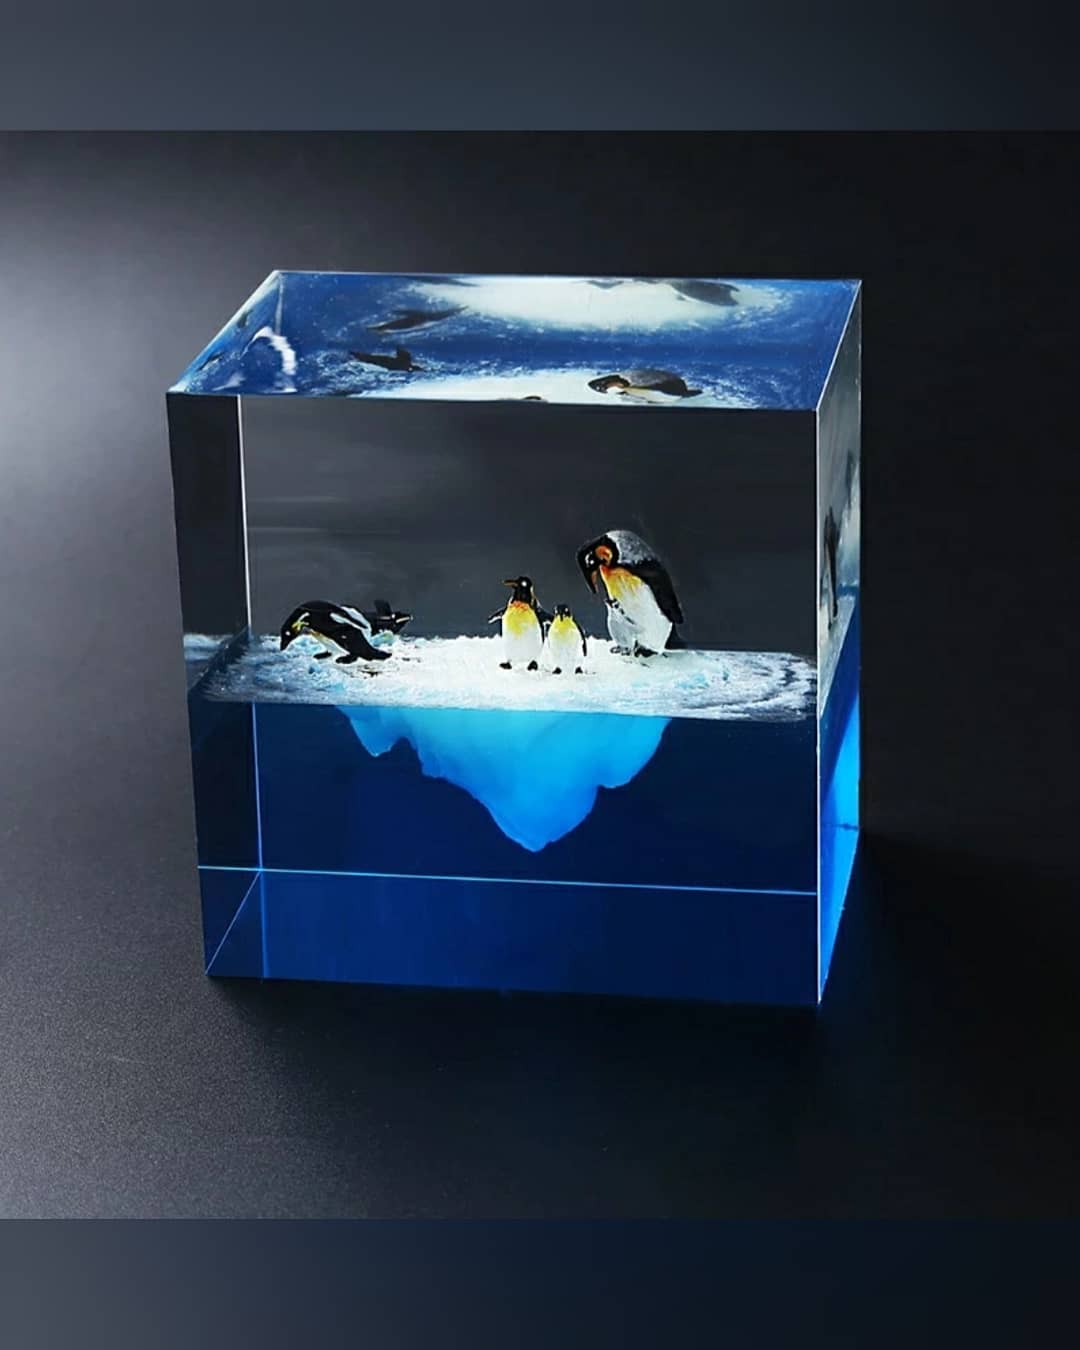  خرجکار پنگوئن